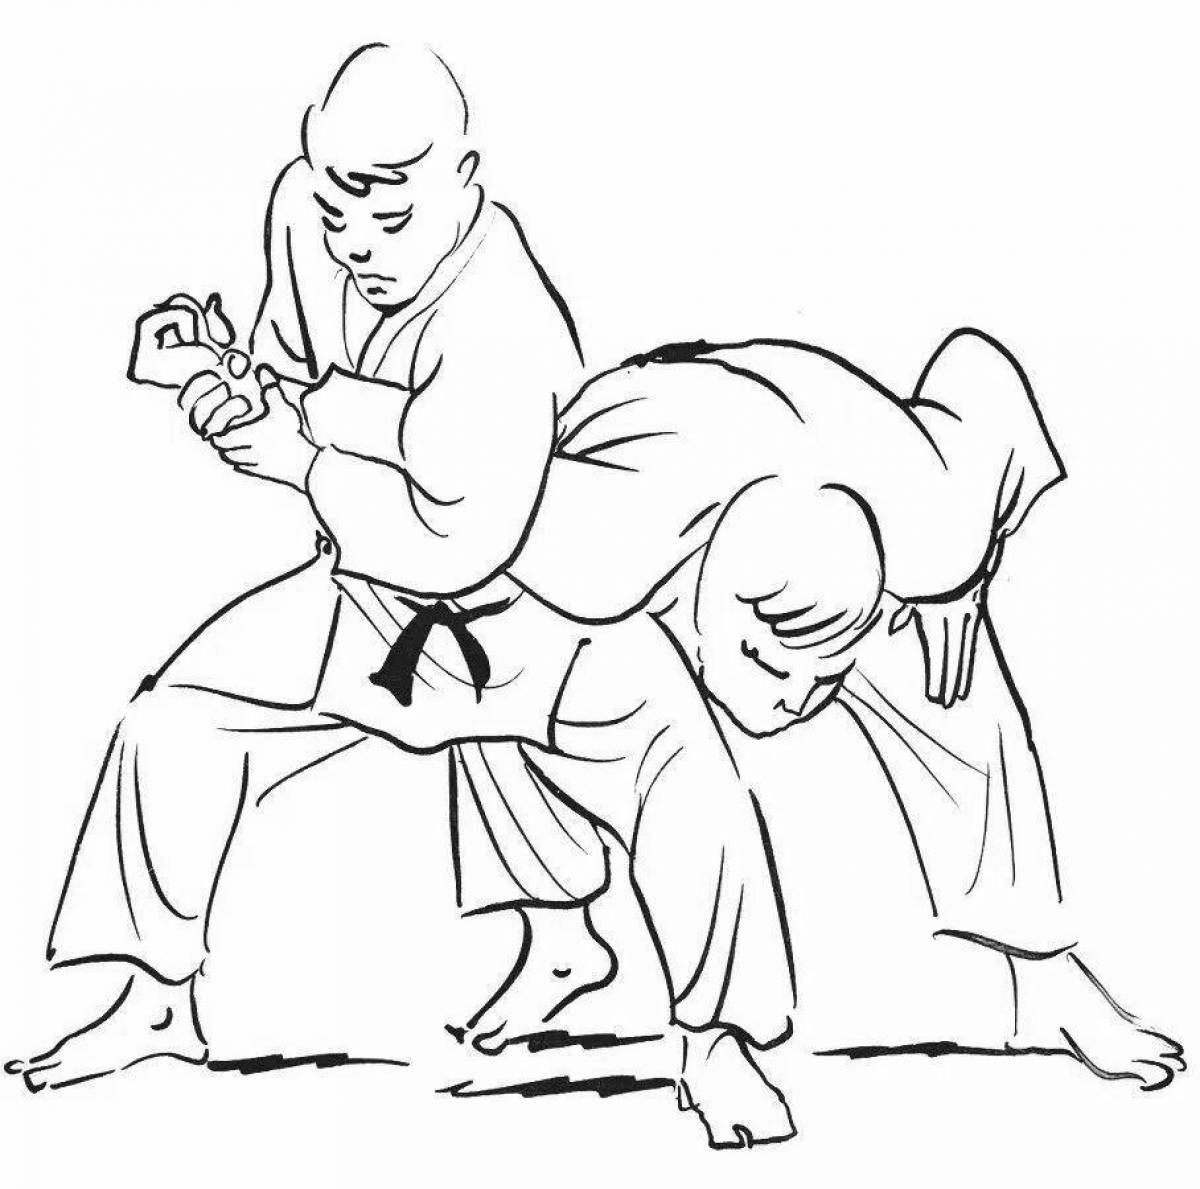 Jitsu fun coloring book